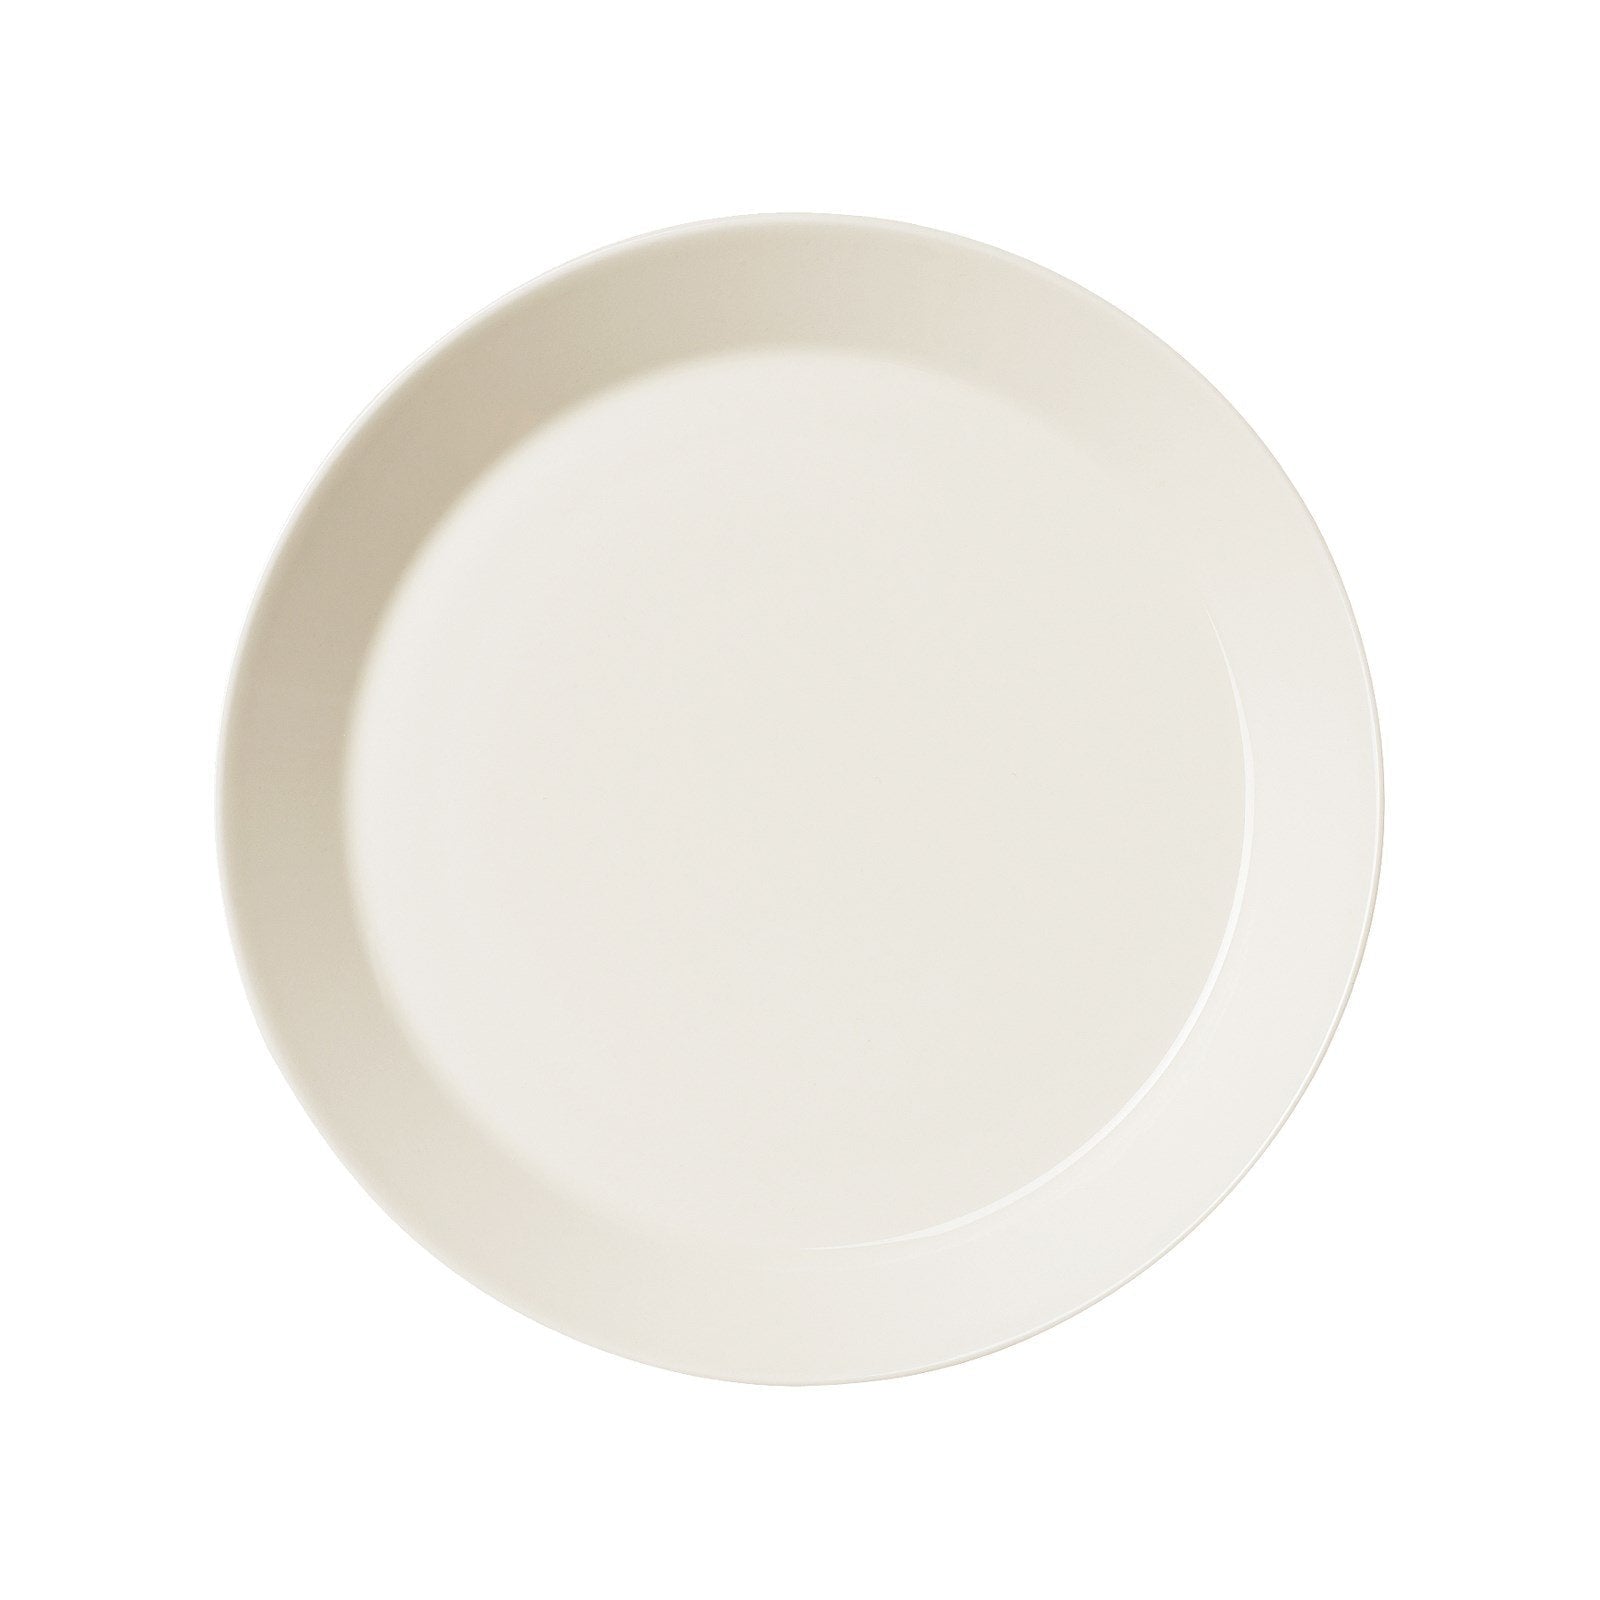 Iittala Plaque teema blanc plat, 26 cm